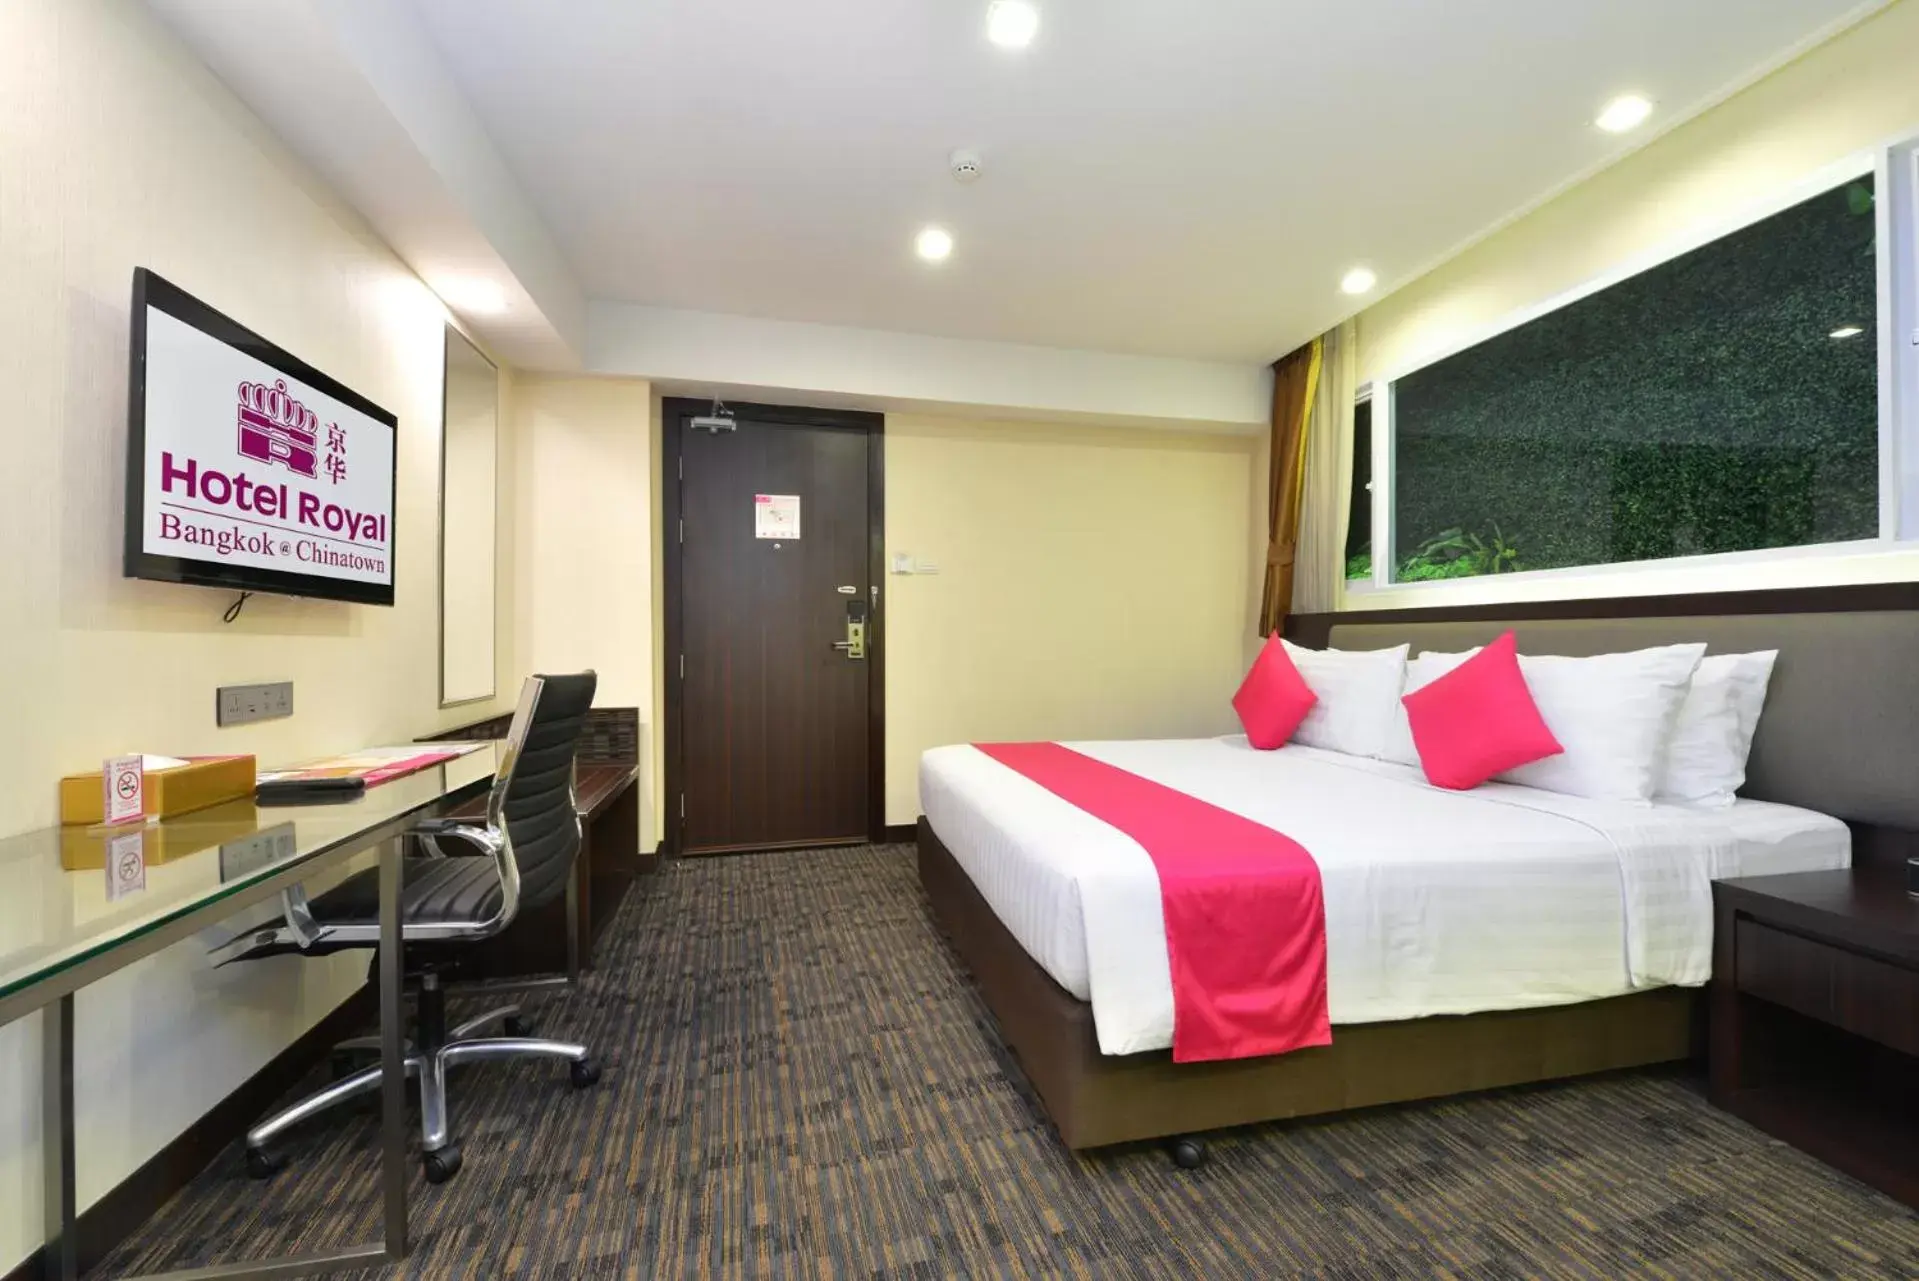 Bedroom in Hotel Royal Bangkok@Chinatown